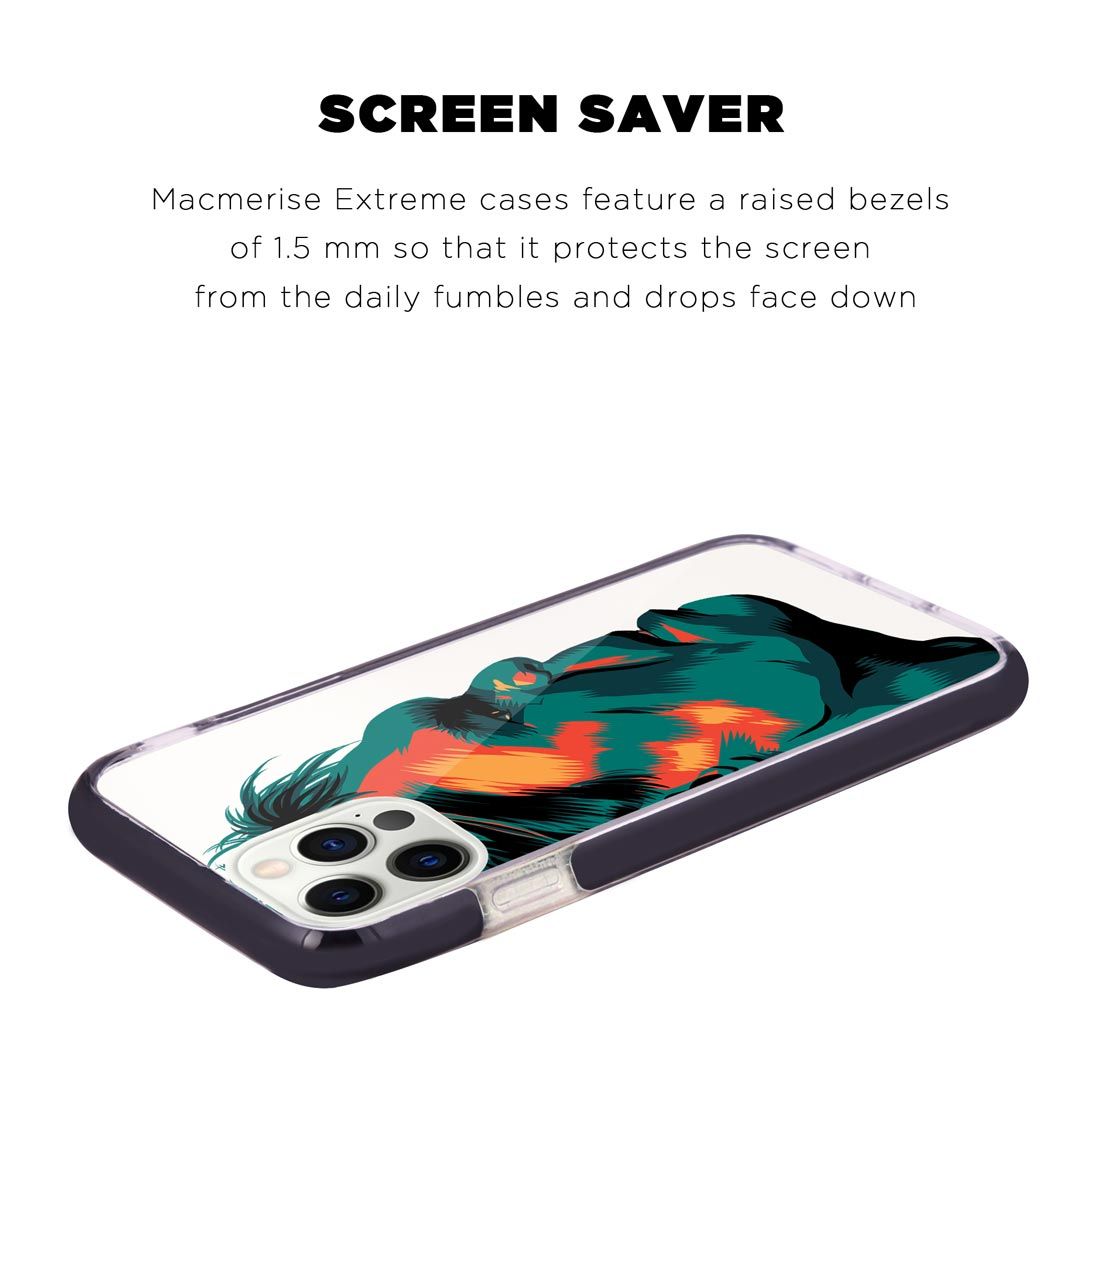 Illuminated Hulk - Extreme Case for iPhone 12 Pro Max